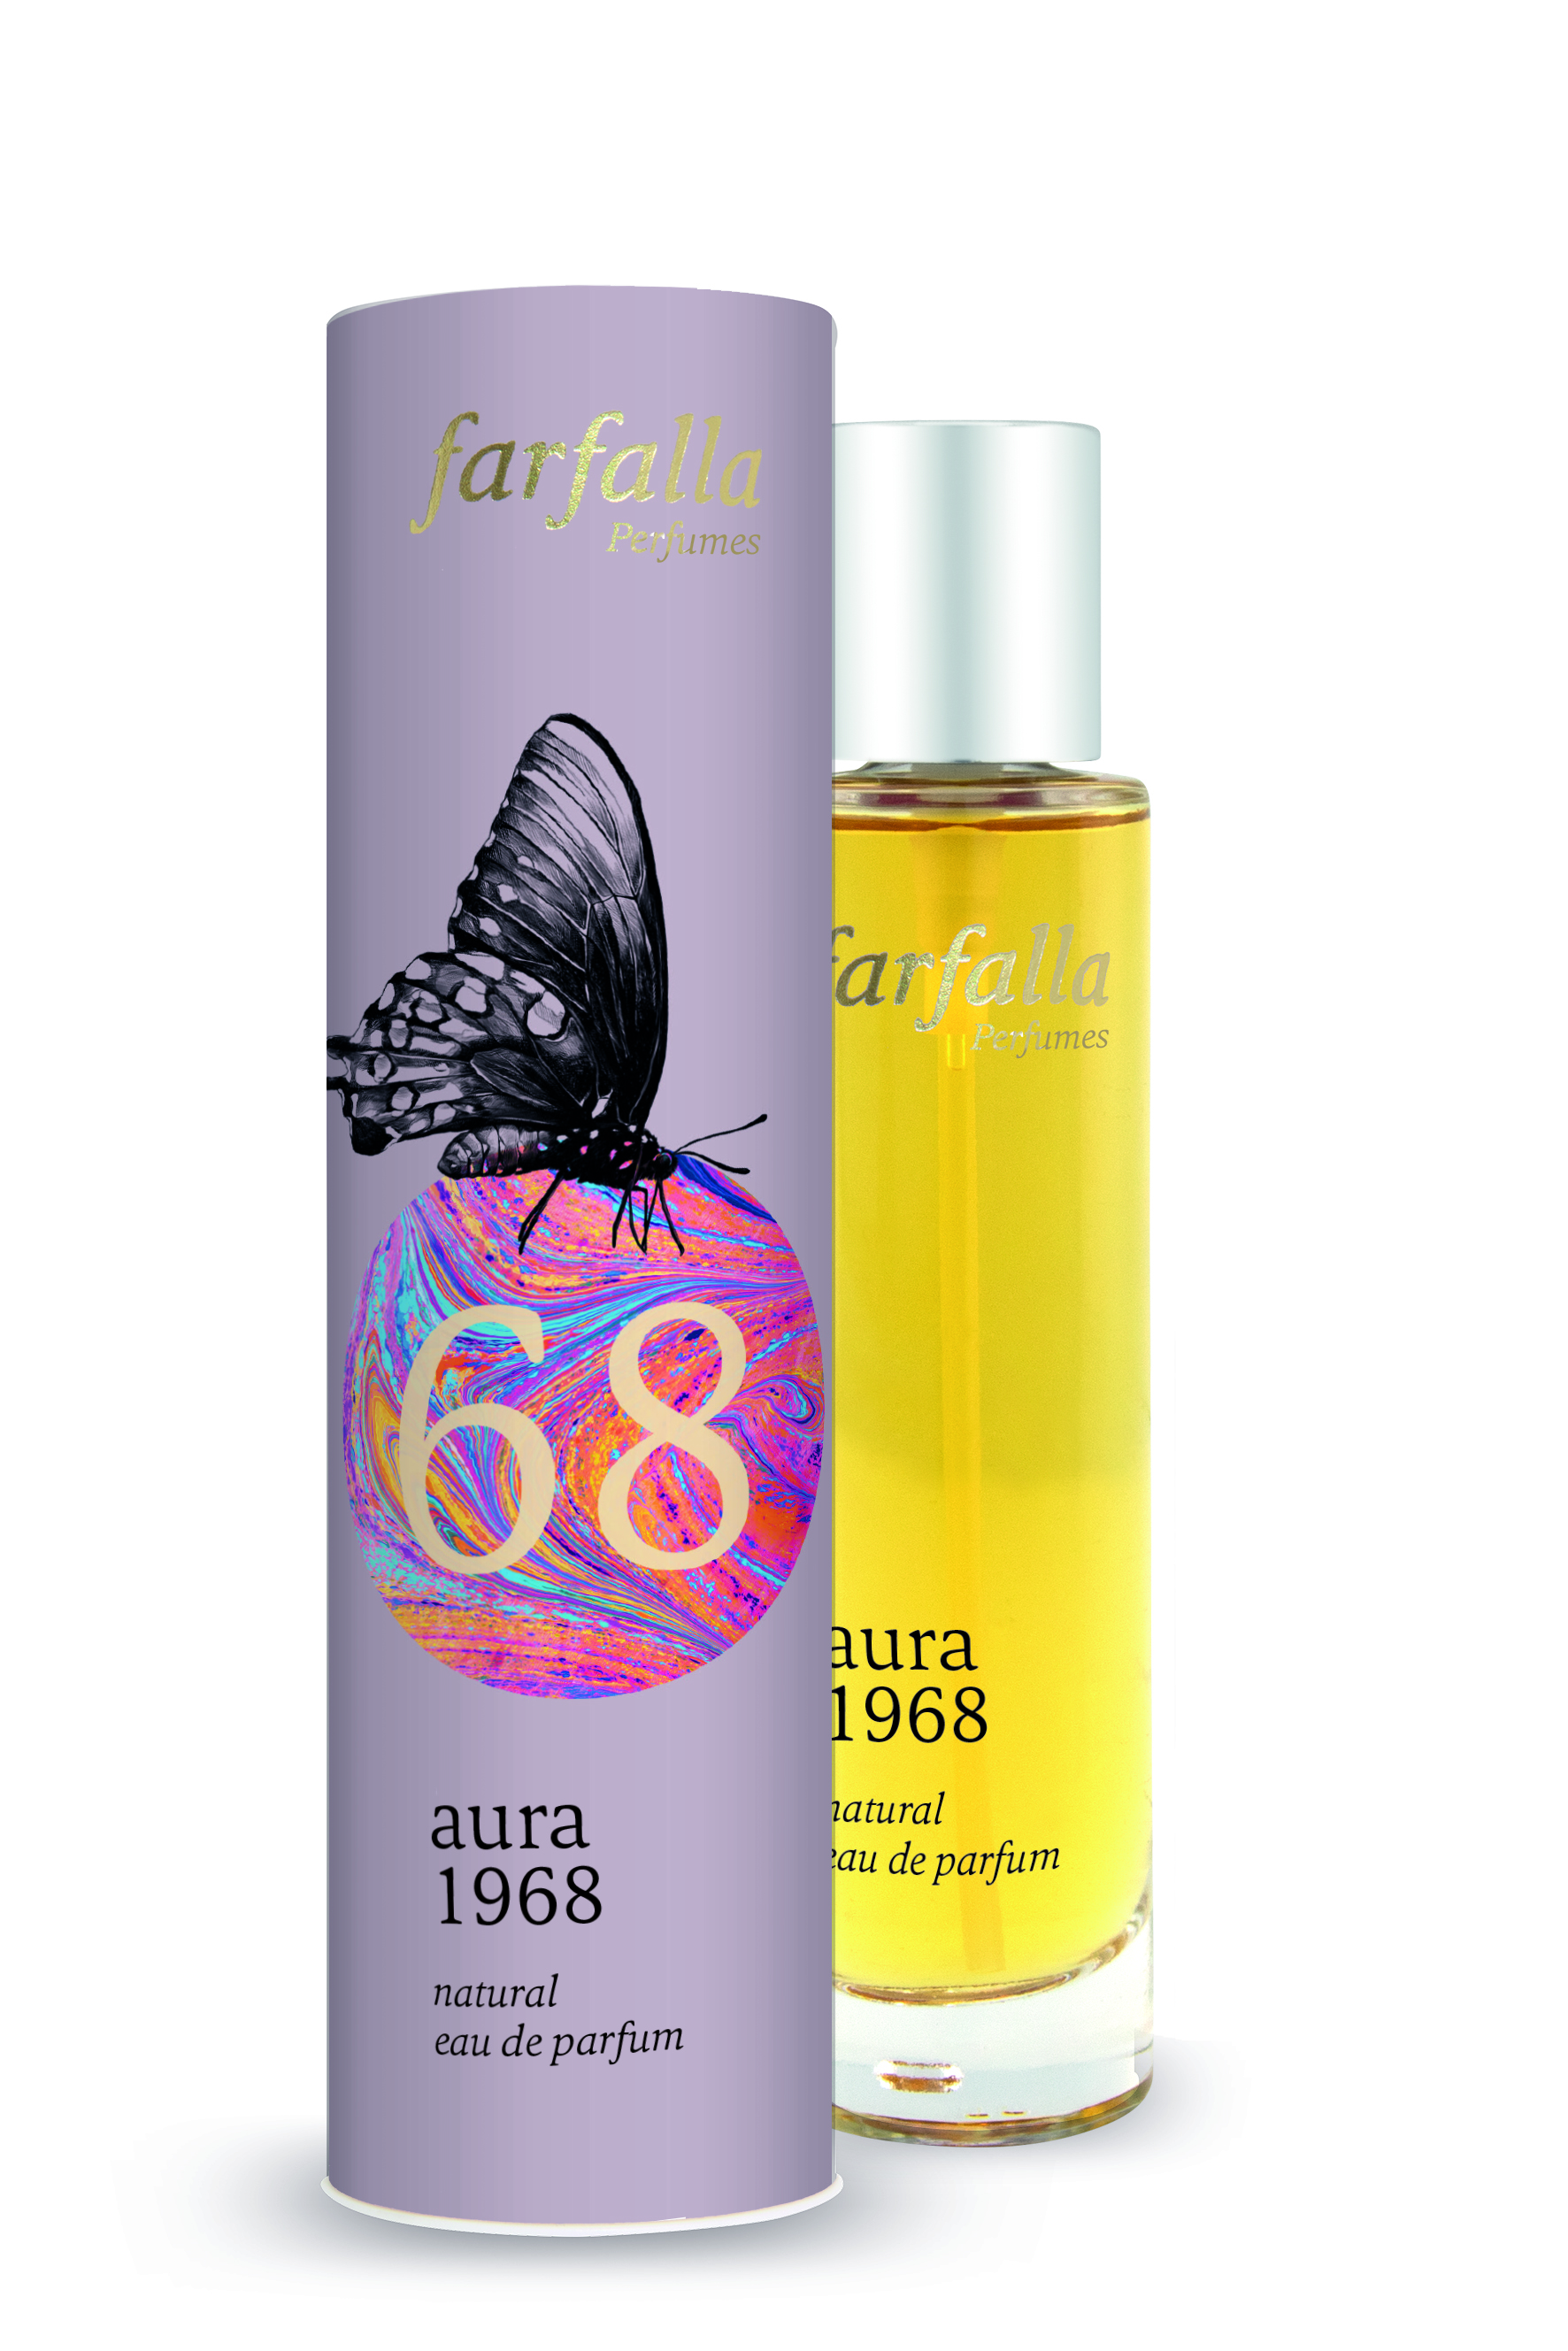 Farfalla Aura 1968 Natural Eau de Parfum 50ml